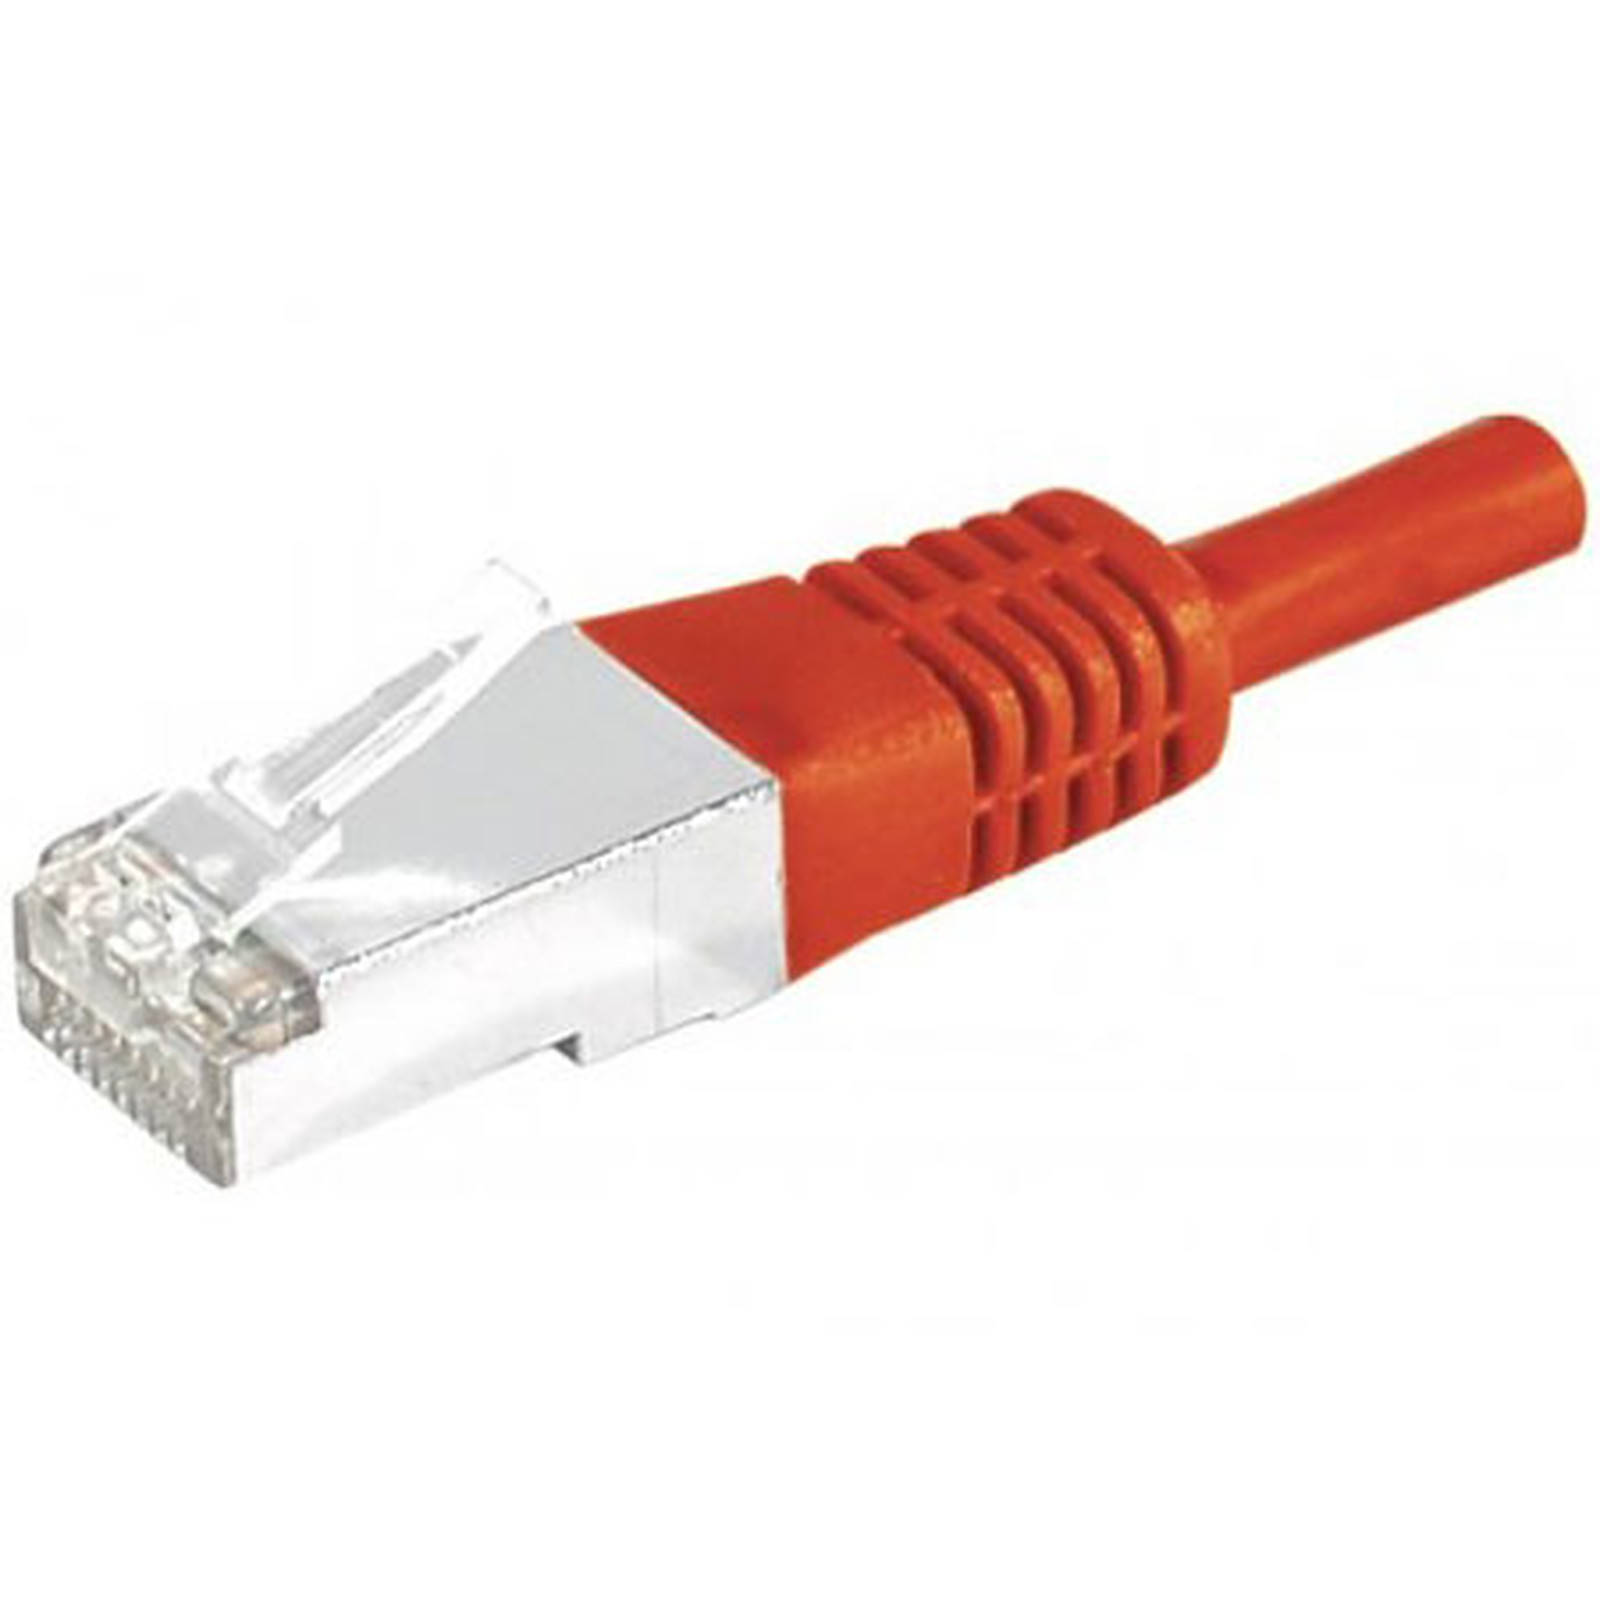 Cable RJ45 categorie 6a S/FTP 5 m (Rouge) - Cable RJ45 Generique